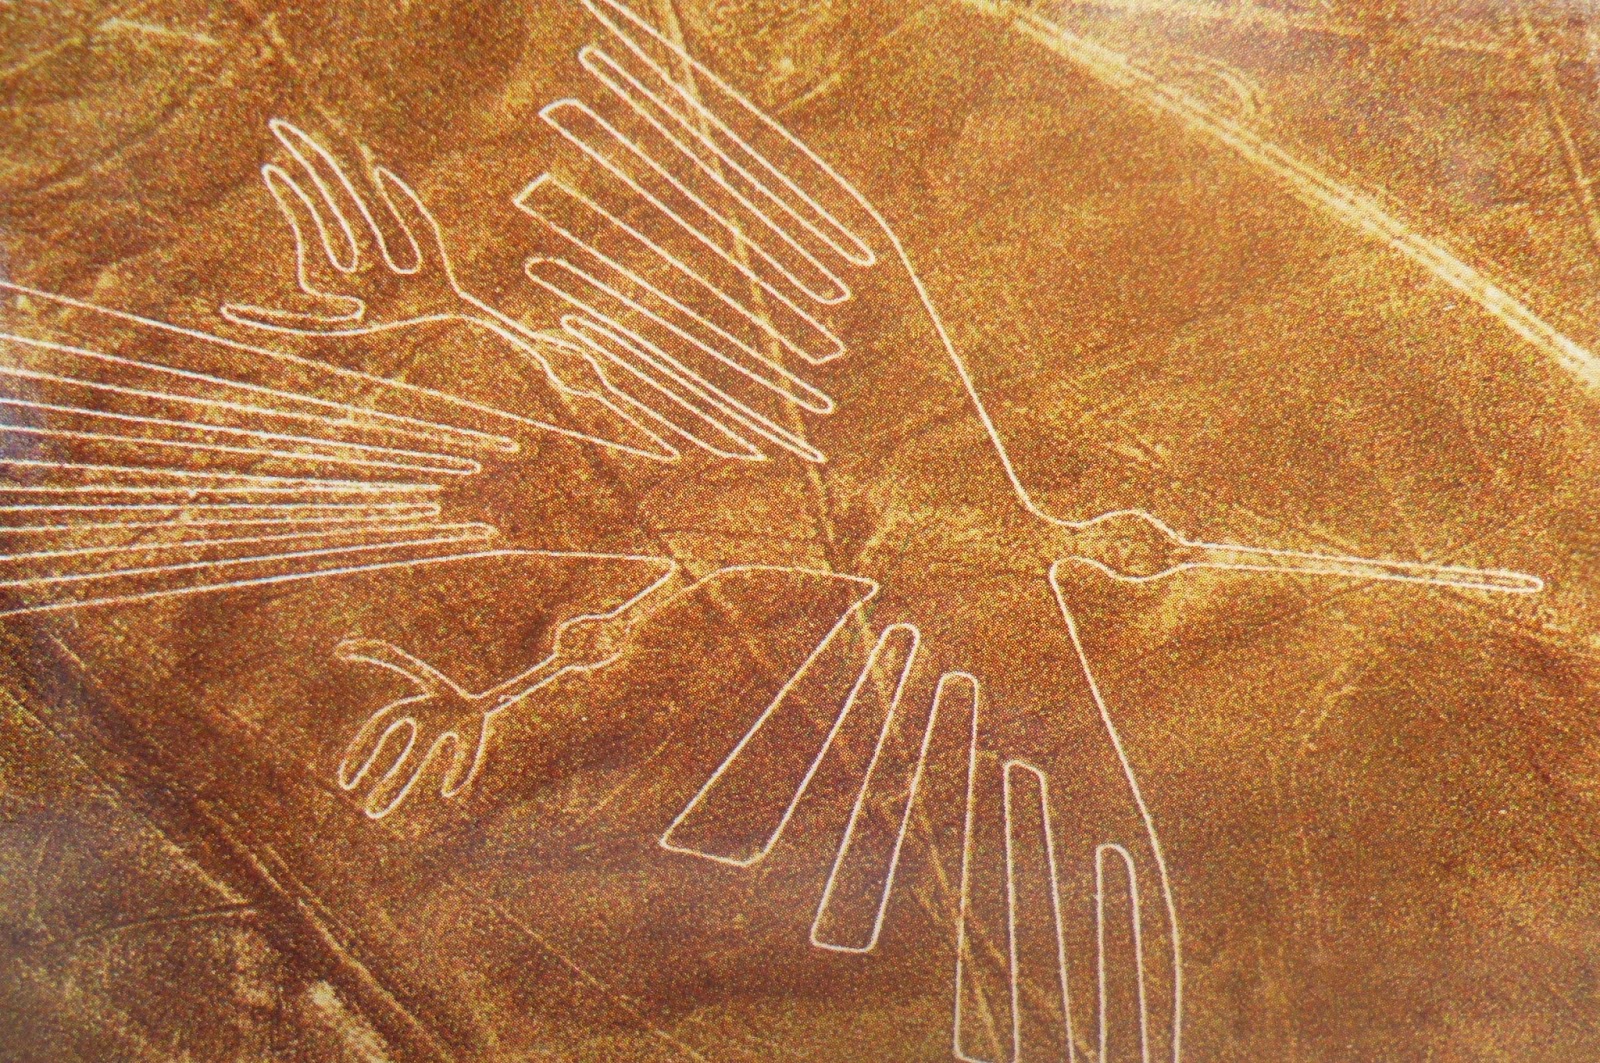 Aventúrate en un viaje a las líneas de Nazca: ¿Qué significan realmente estas geoglifos del desierto Peruano?